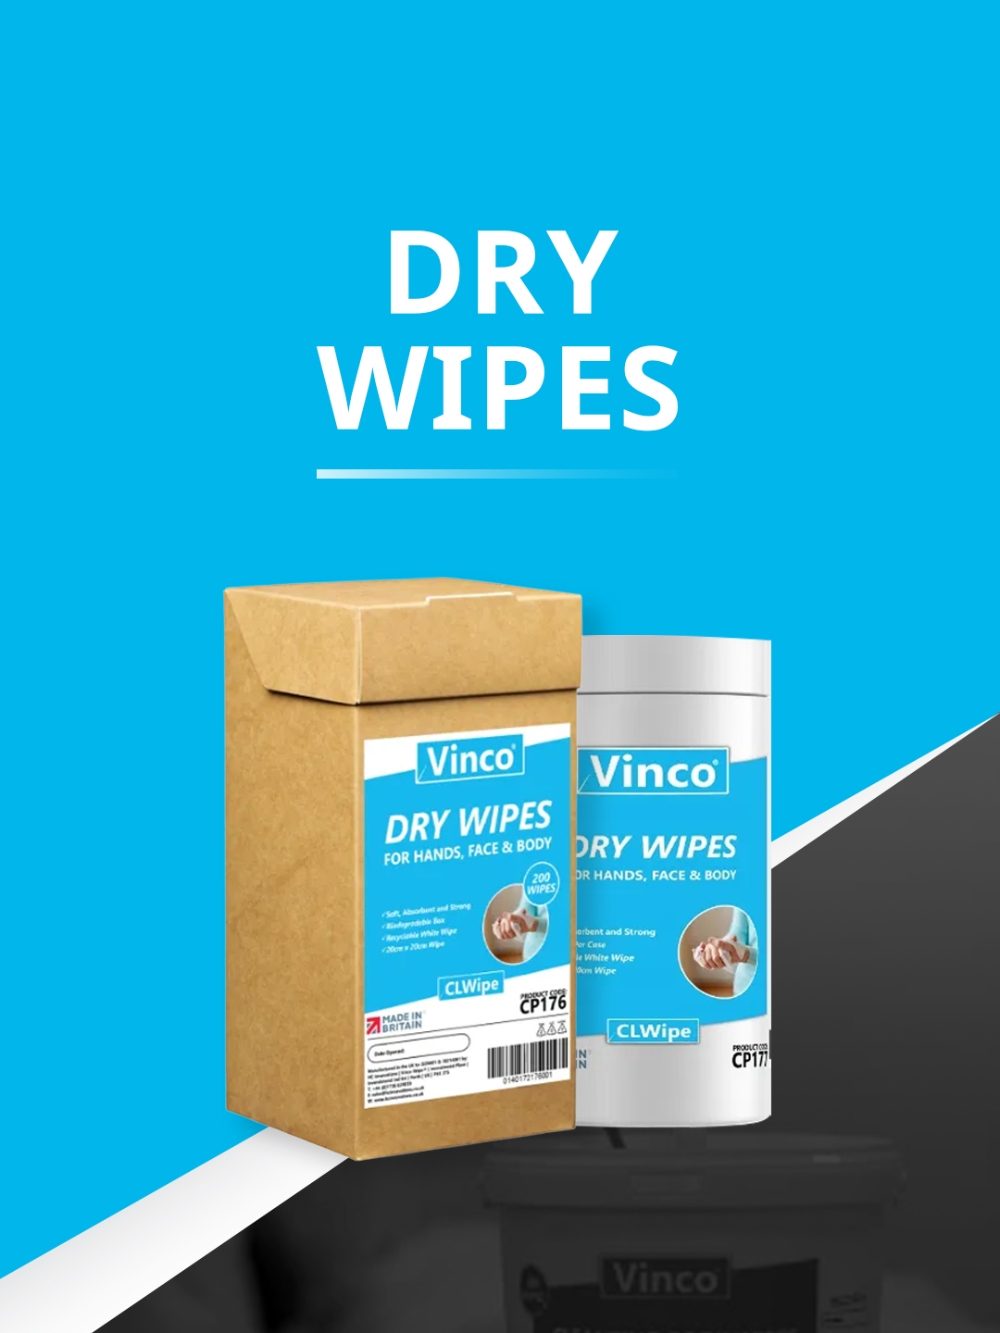 Dry Wipes